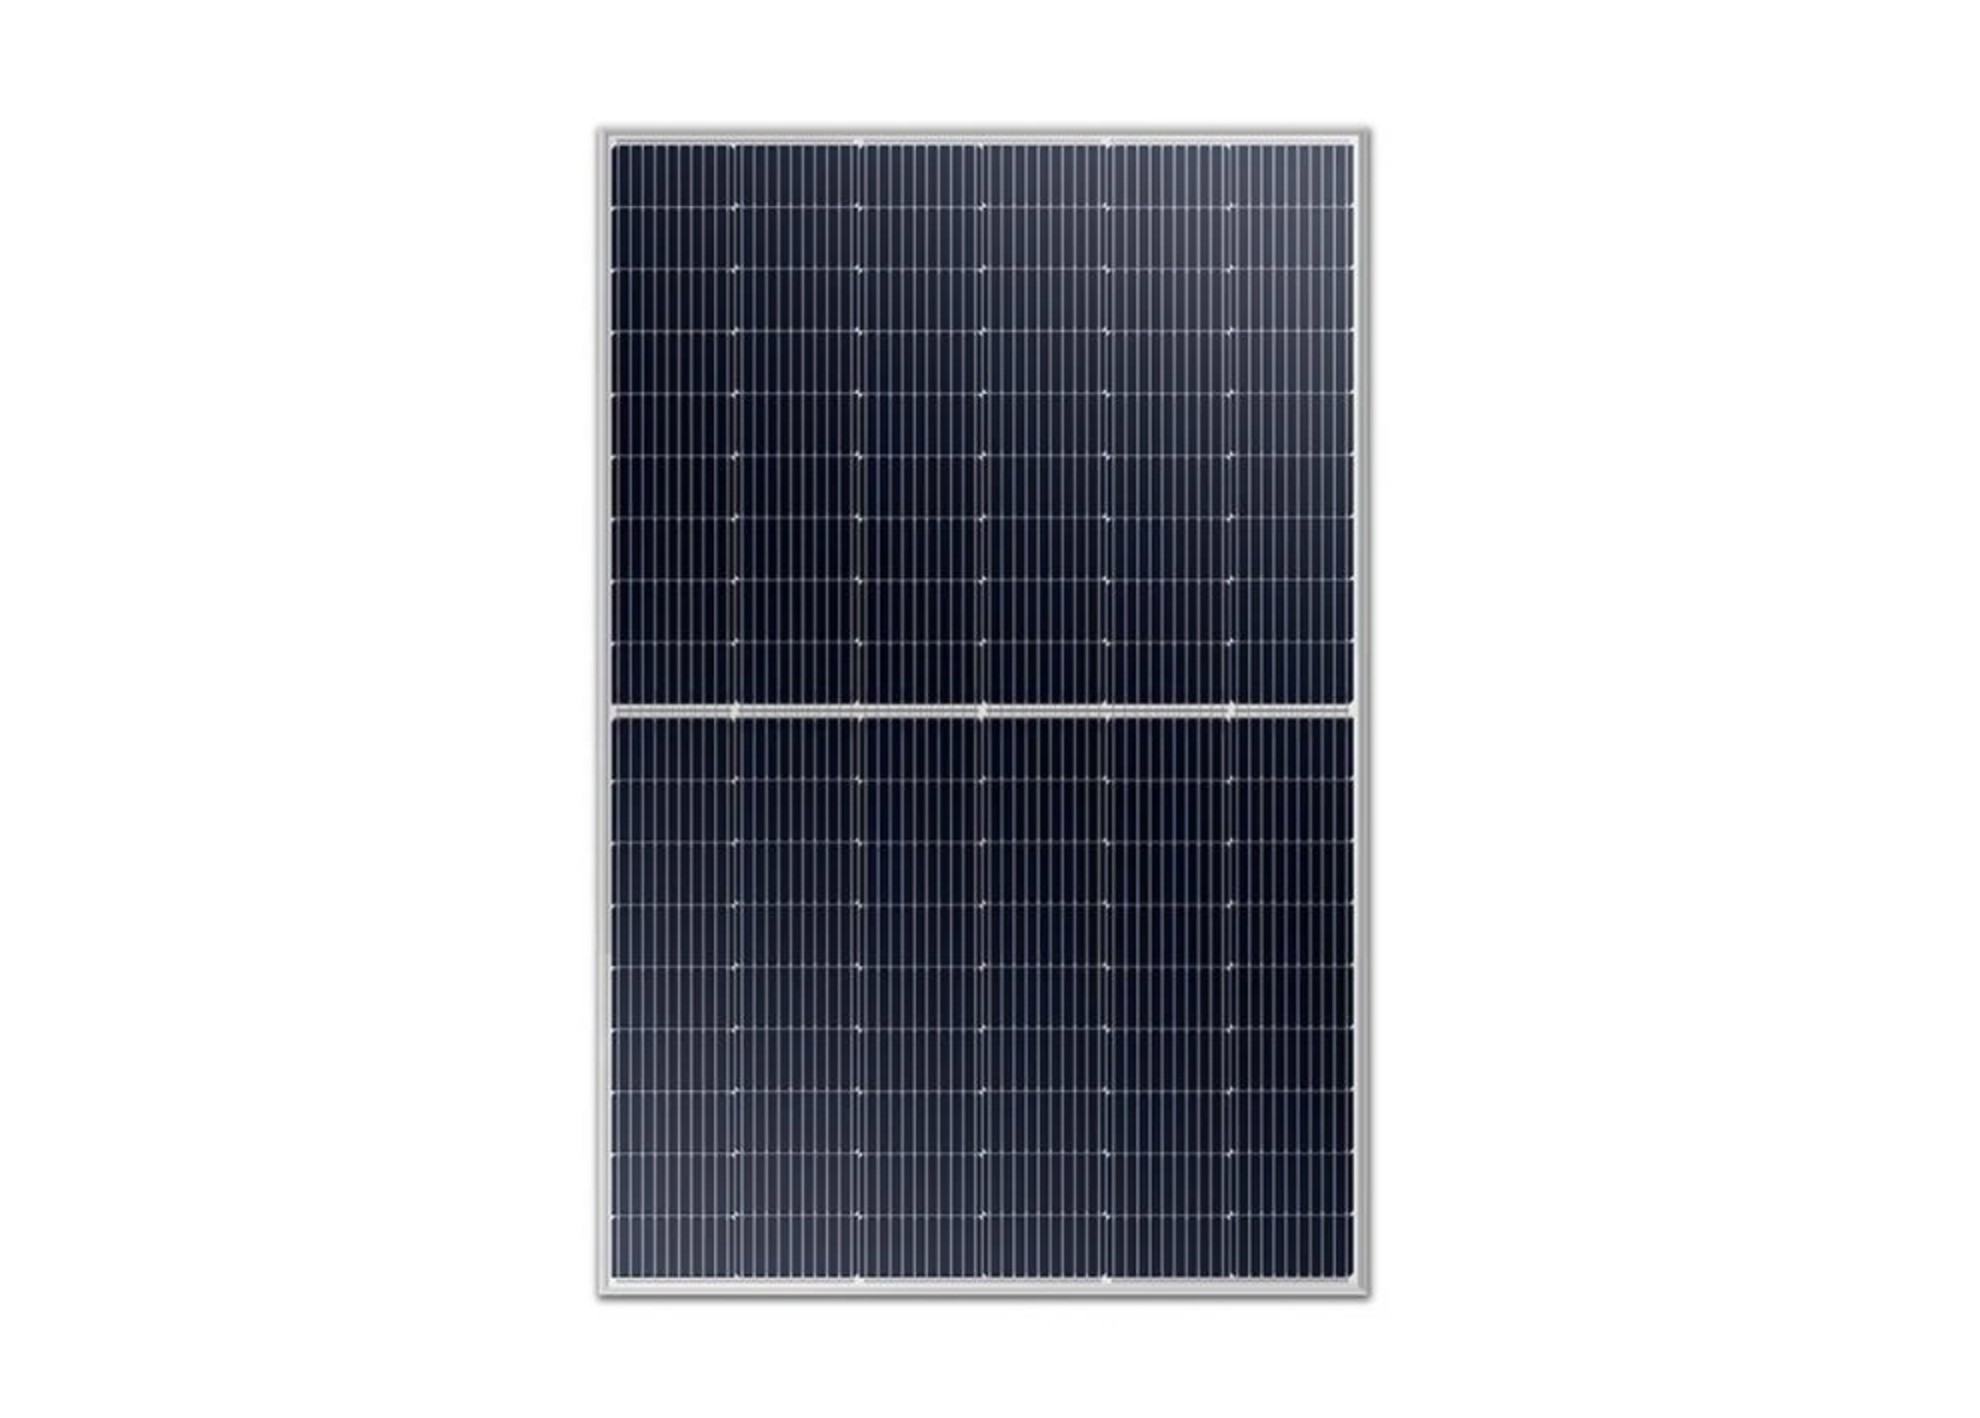 Solárny panel SUNKET 410W strieborný, paleta(36ks)